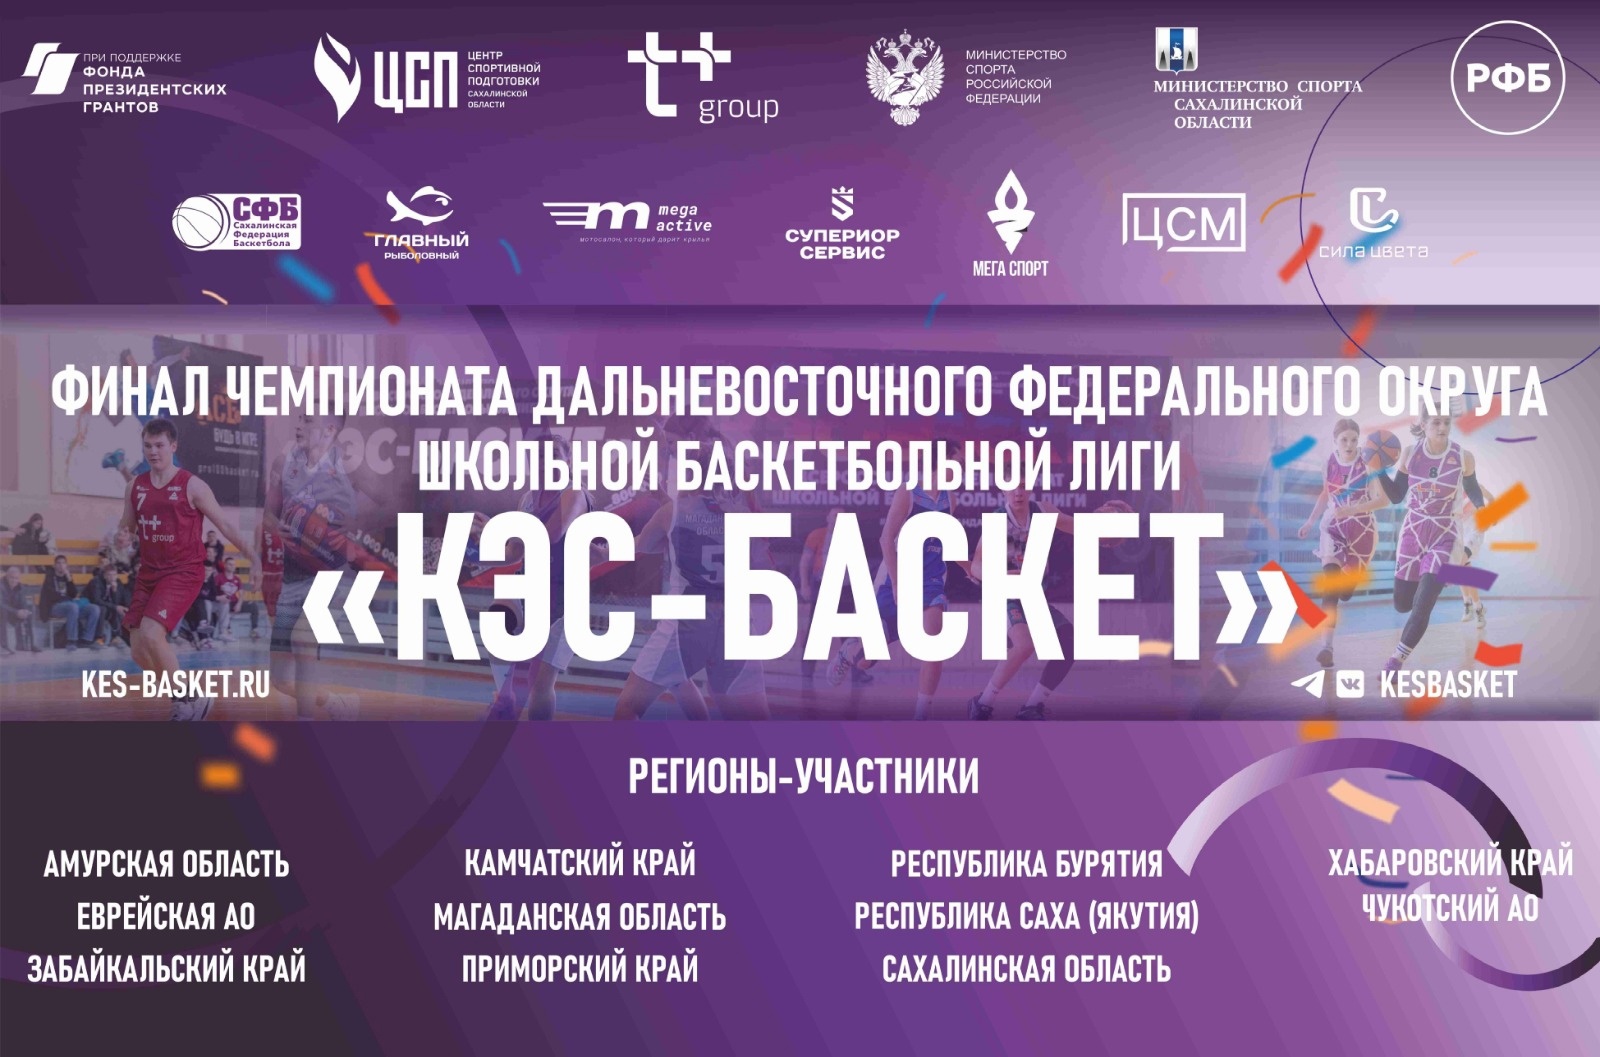 Дальневосточный этап чемпионата ШБЛ "КЭС-БАСКЕТ"